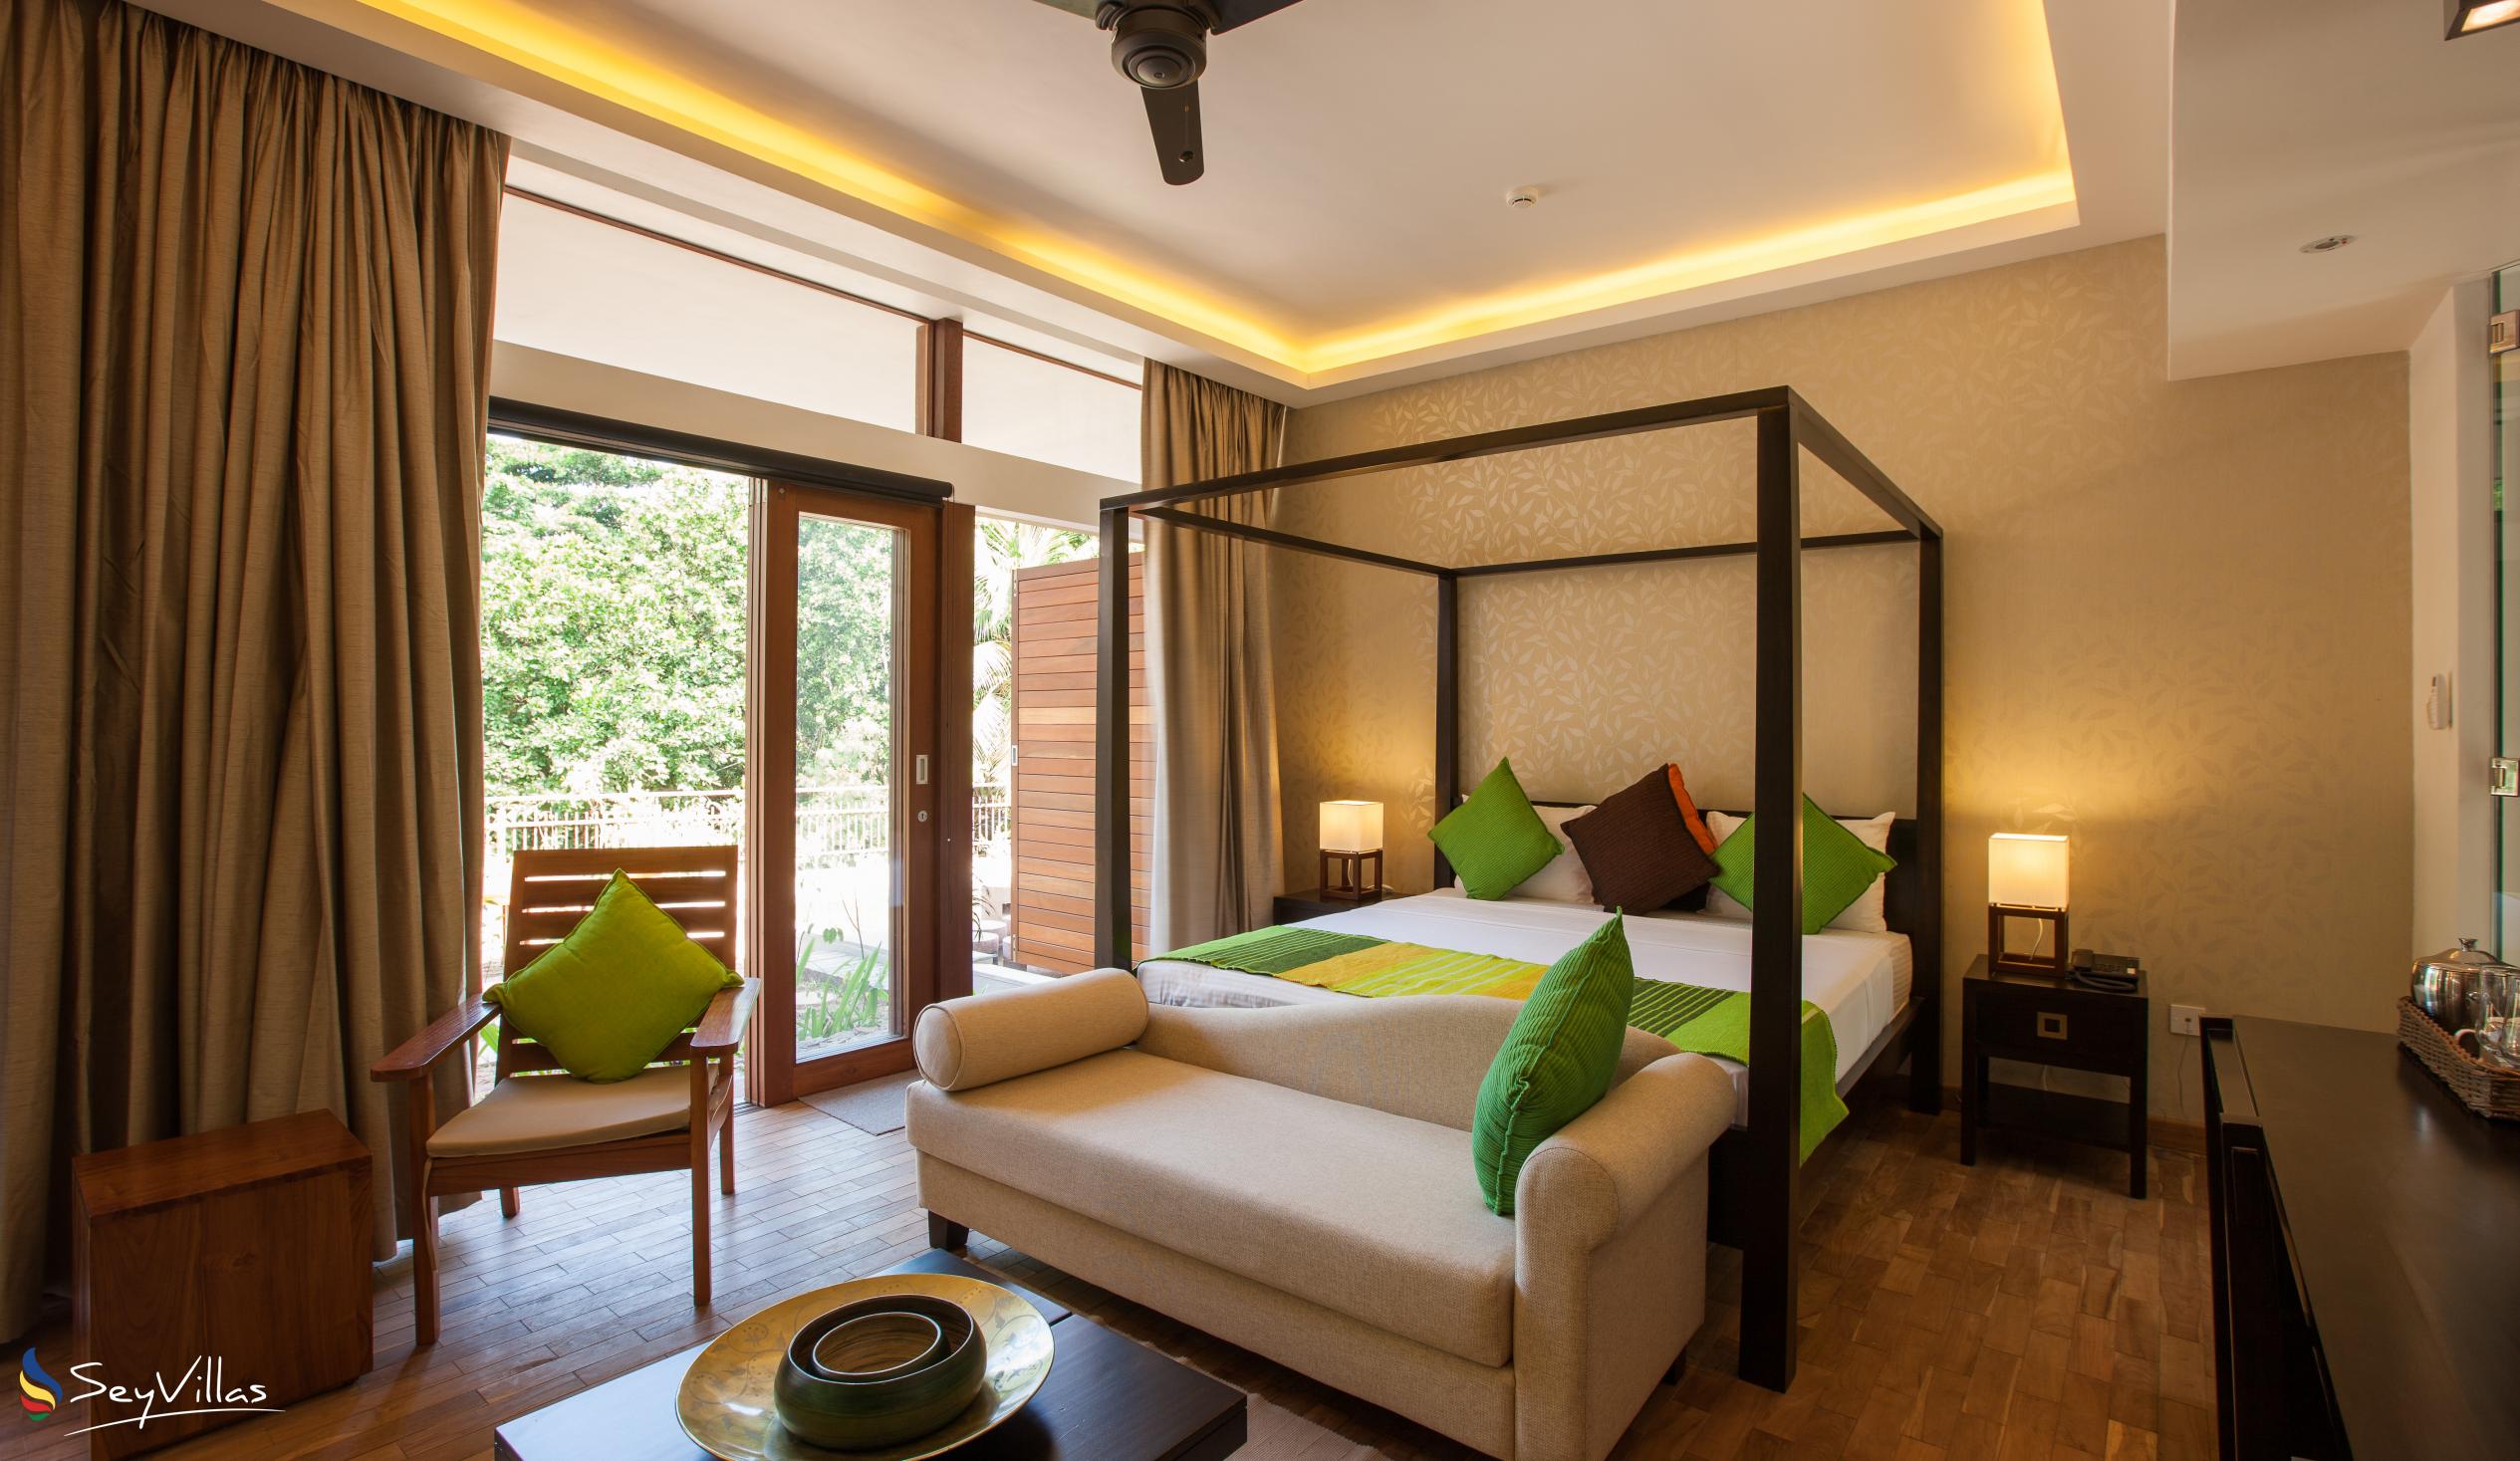 Photo 59: Le Relax Luxury Lodge - Deluxe Suite - La Digue (Seychelles)